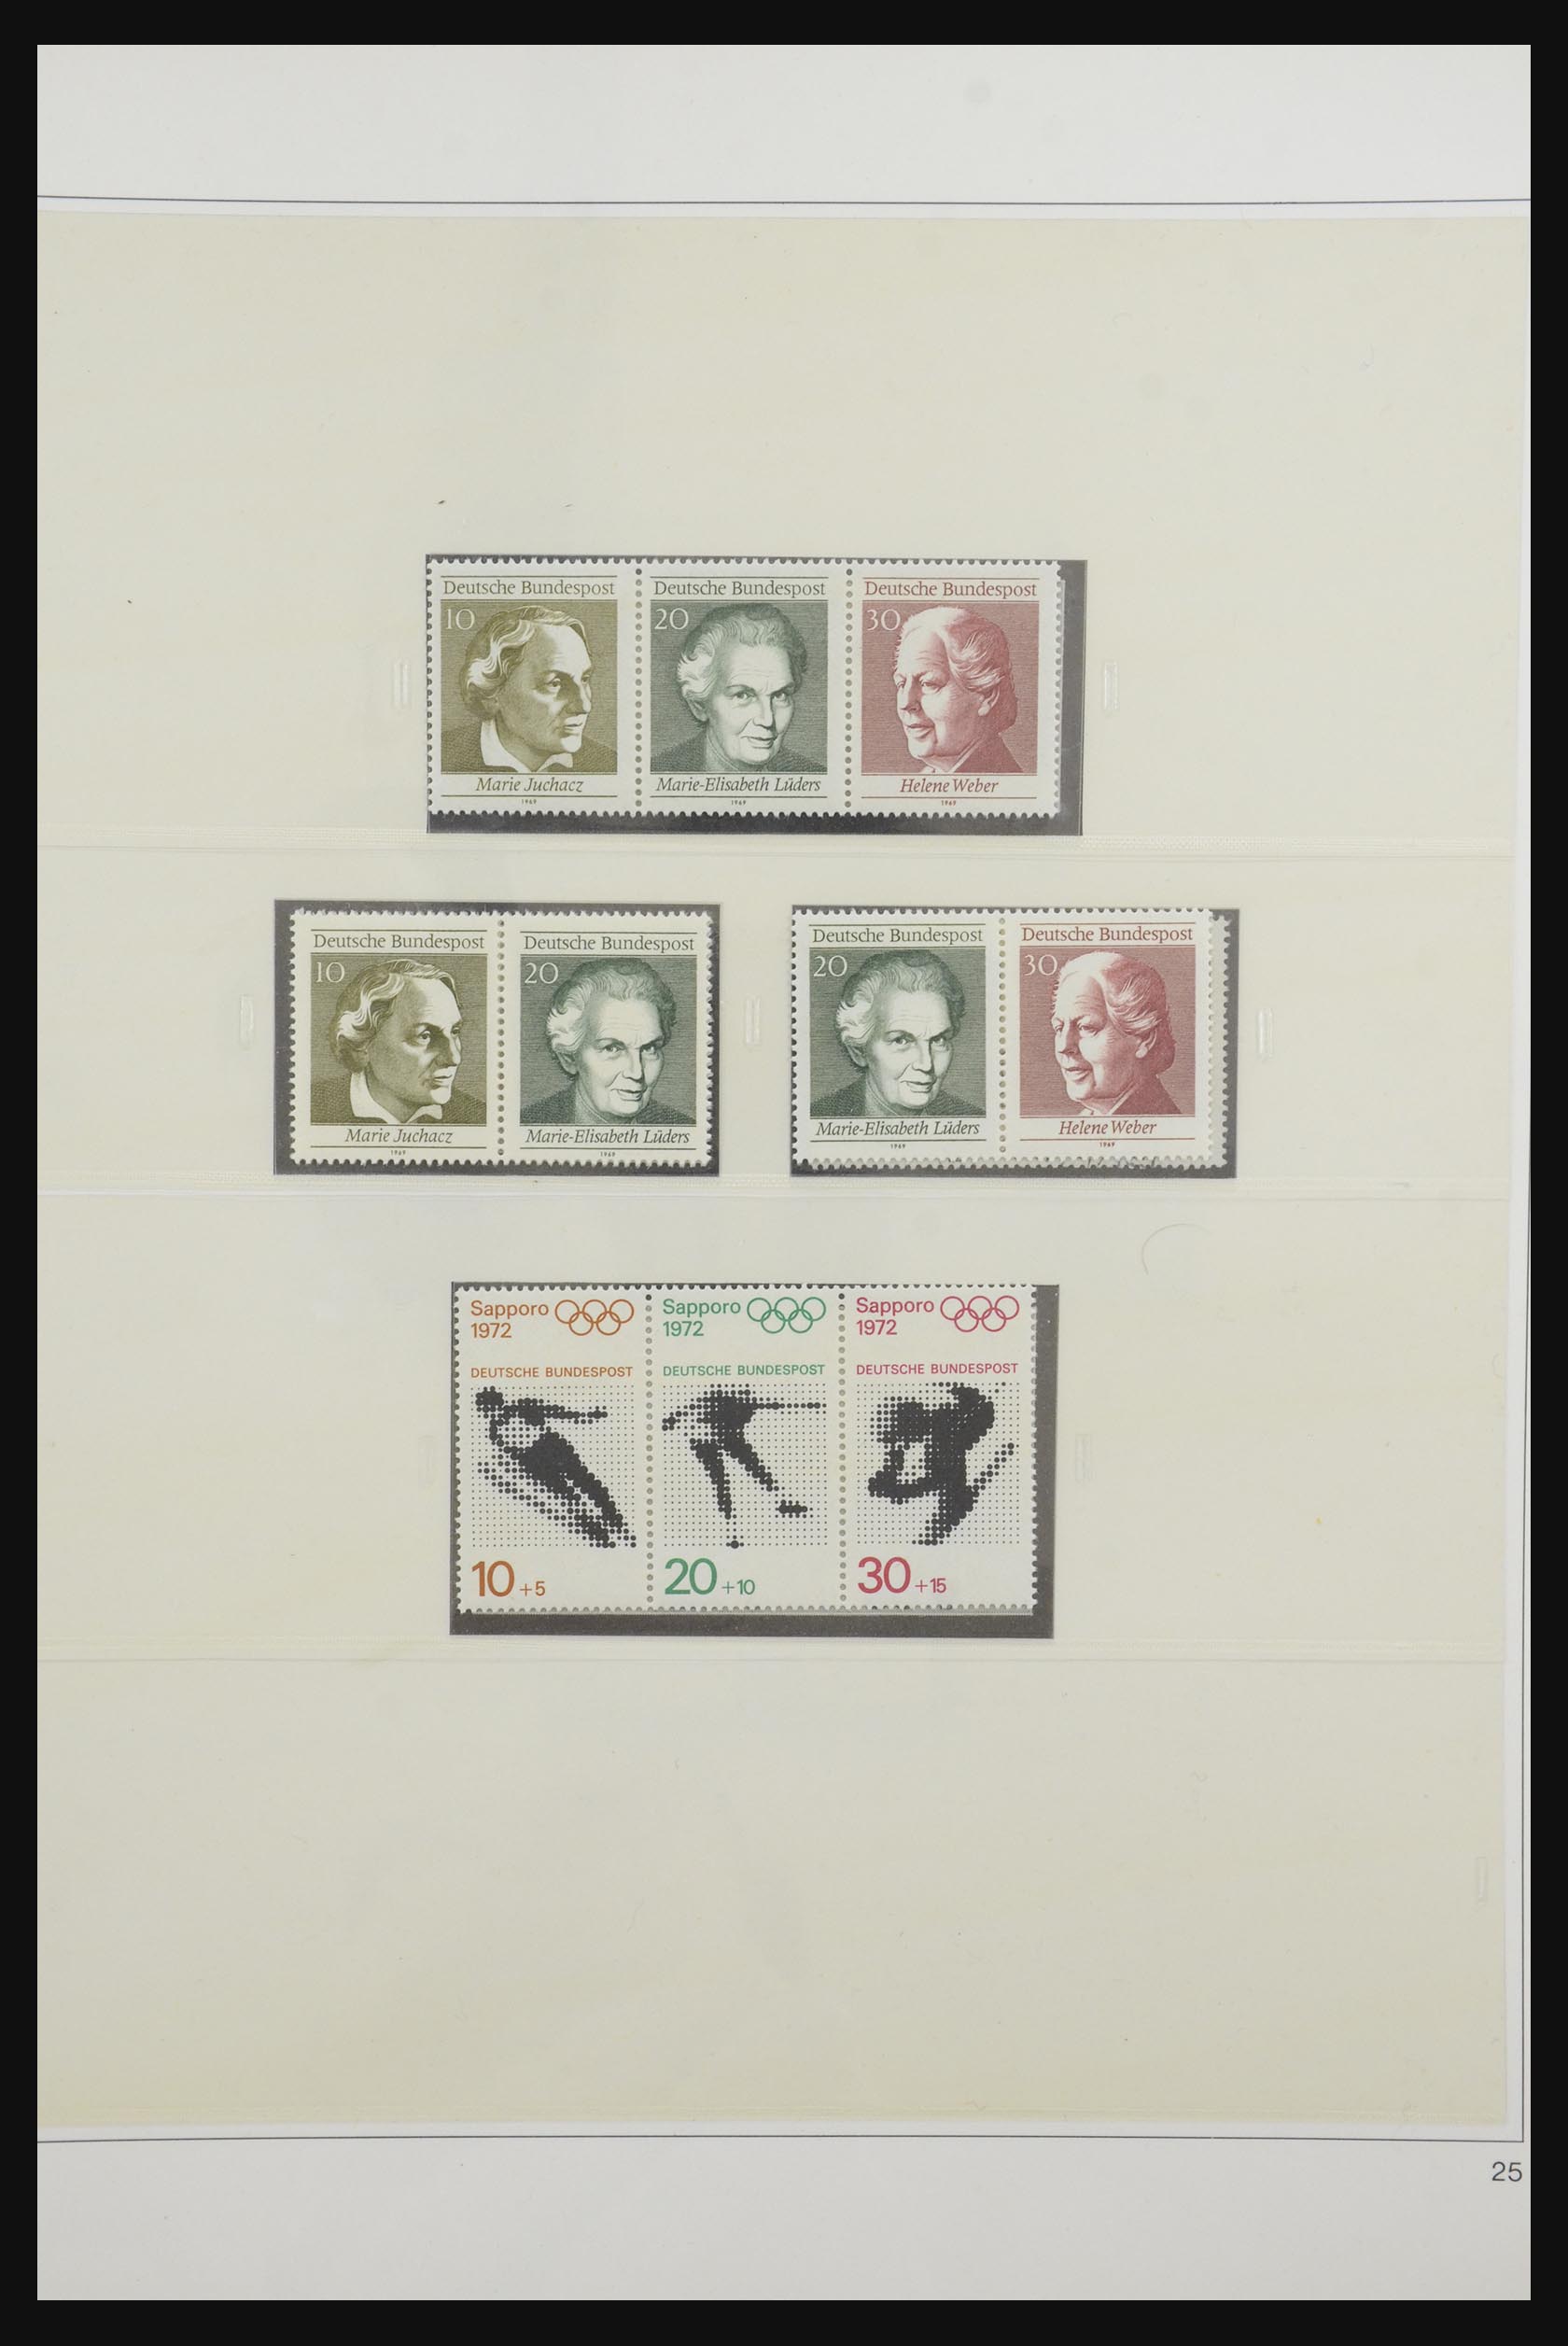 31842 034 - 31842 Bundespost combinaties 1951-2003.